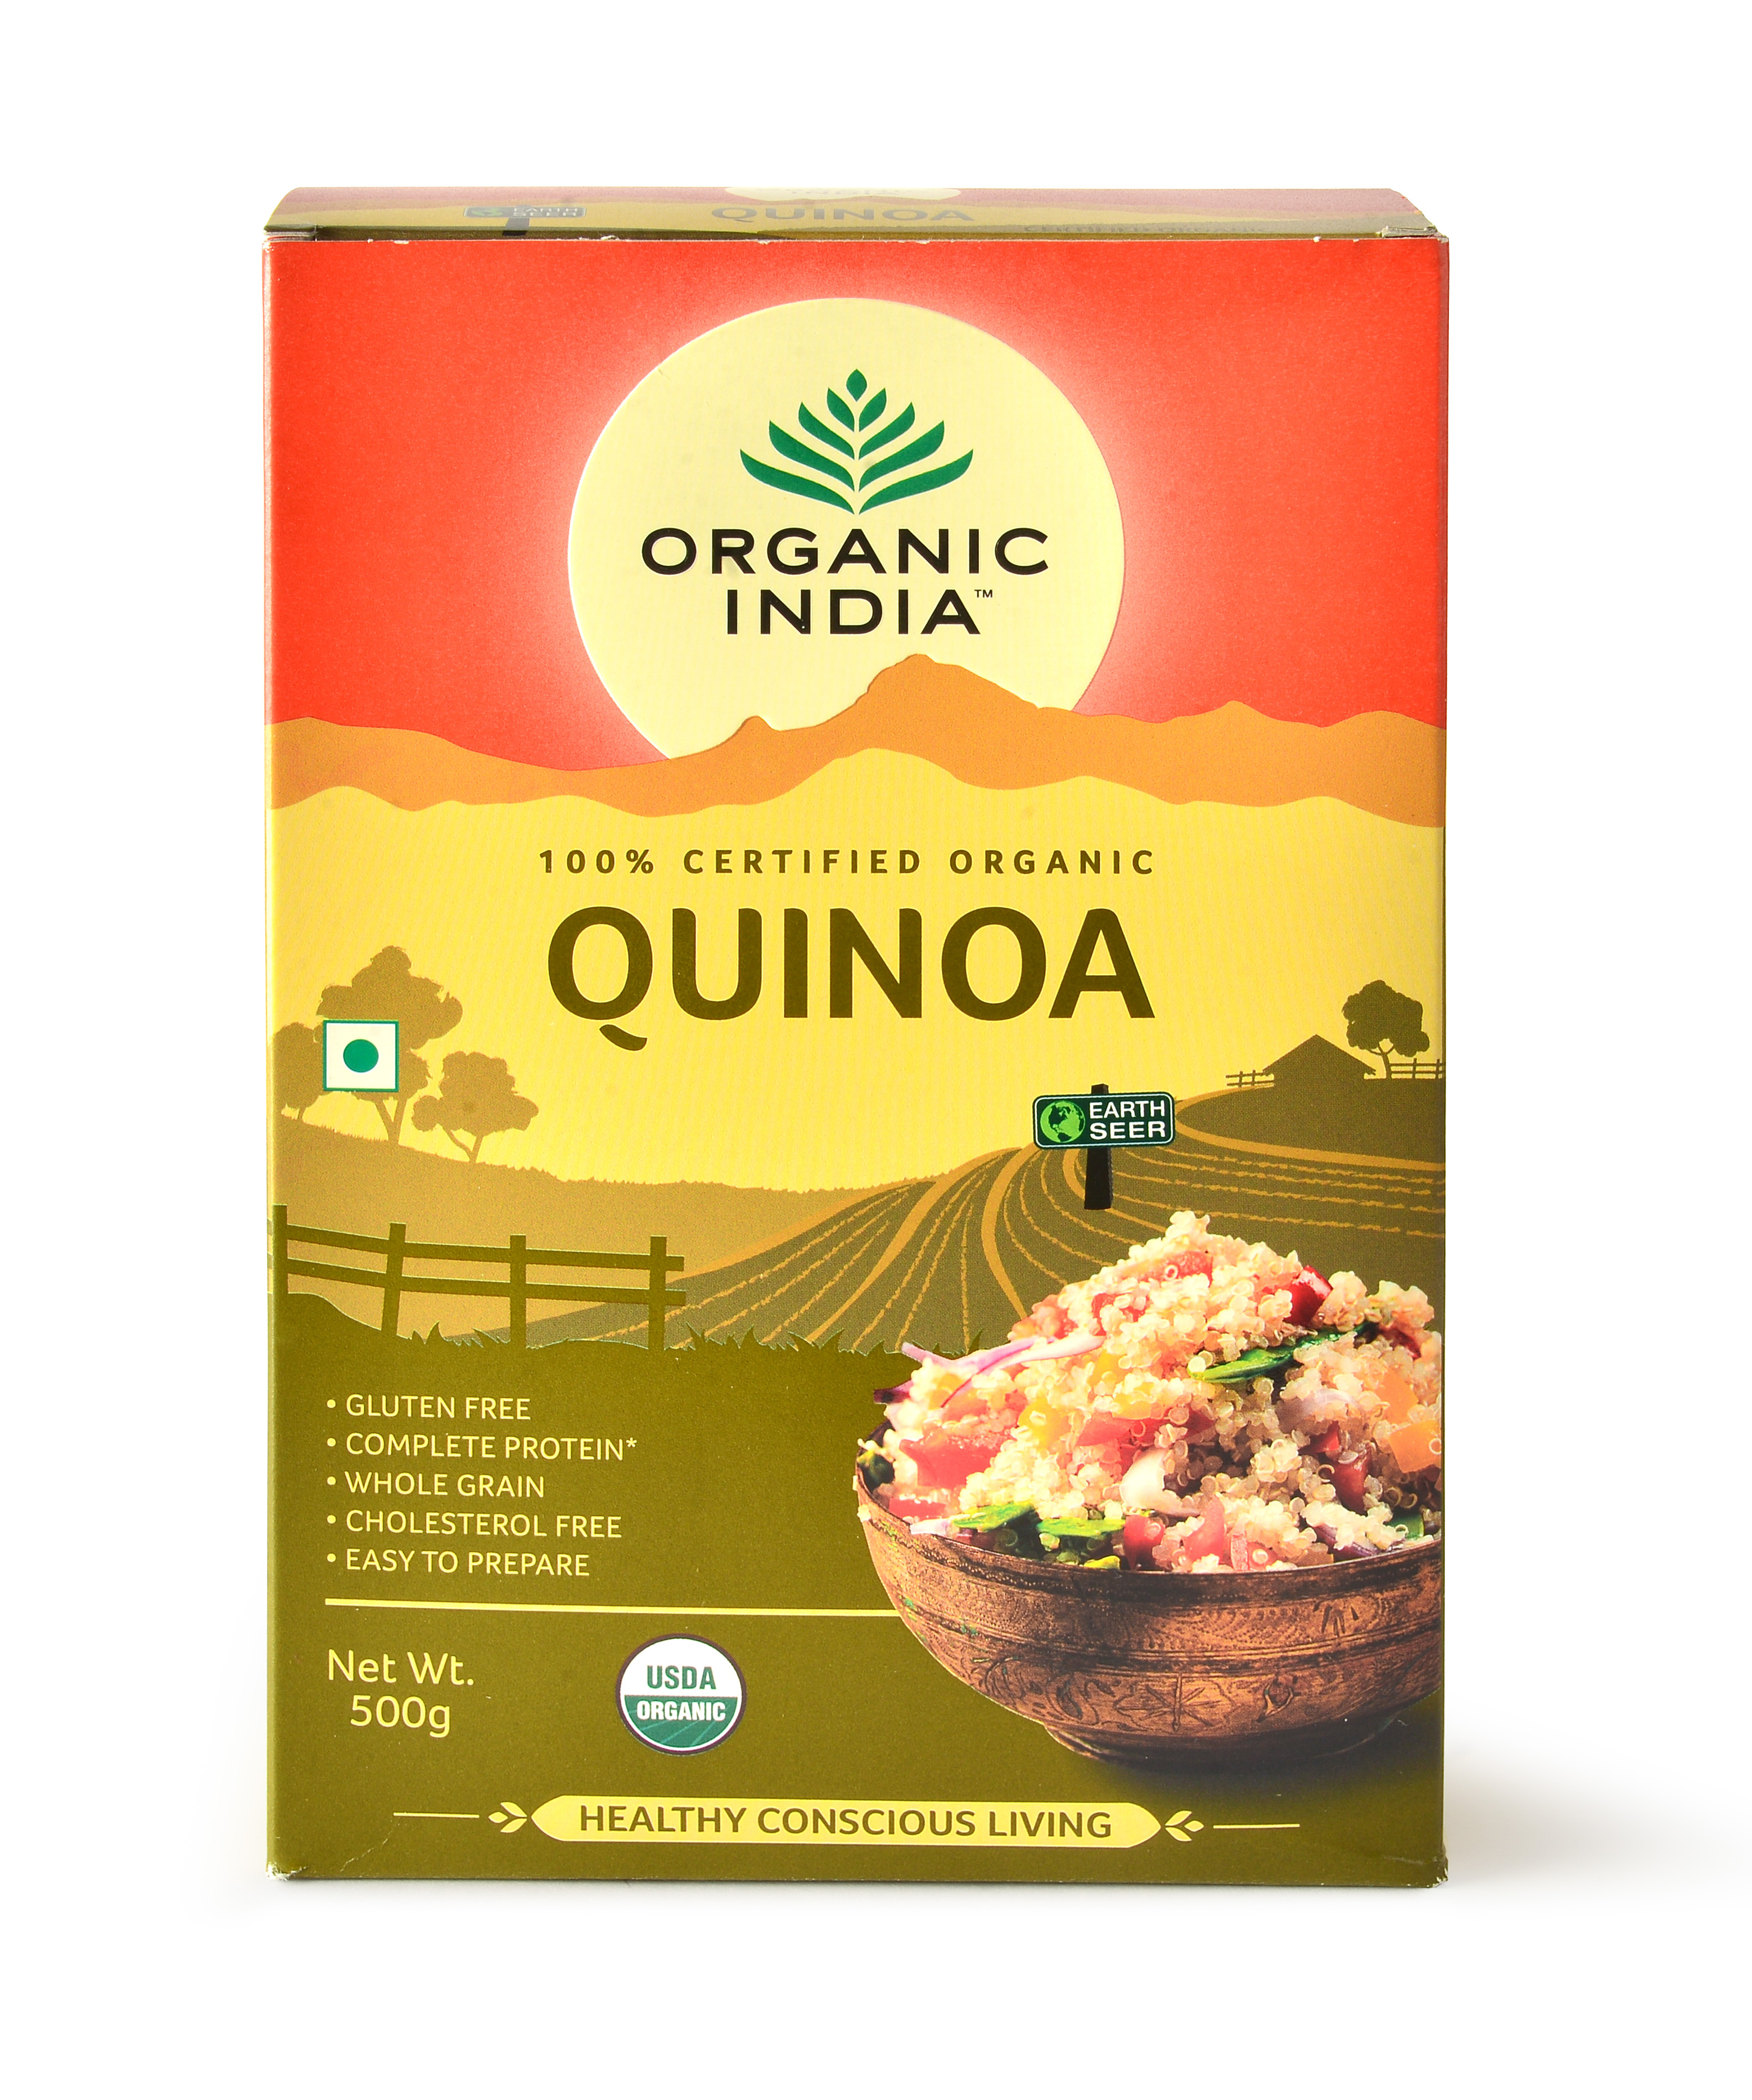 Buy Organic India Quinoa Online In India At Best Price